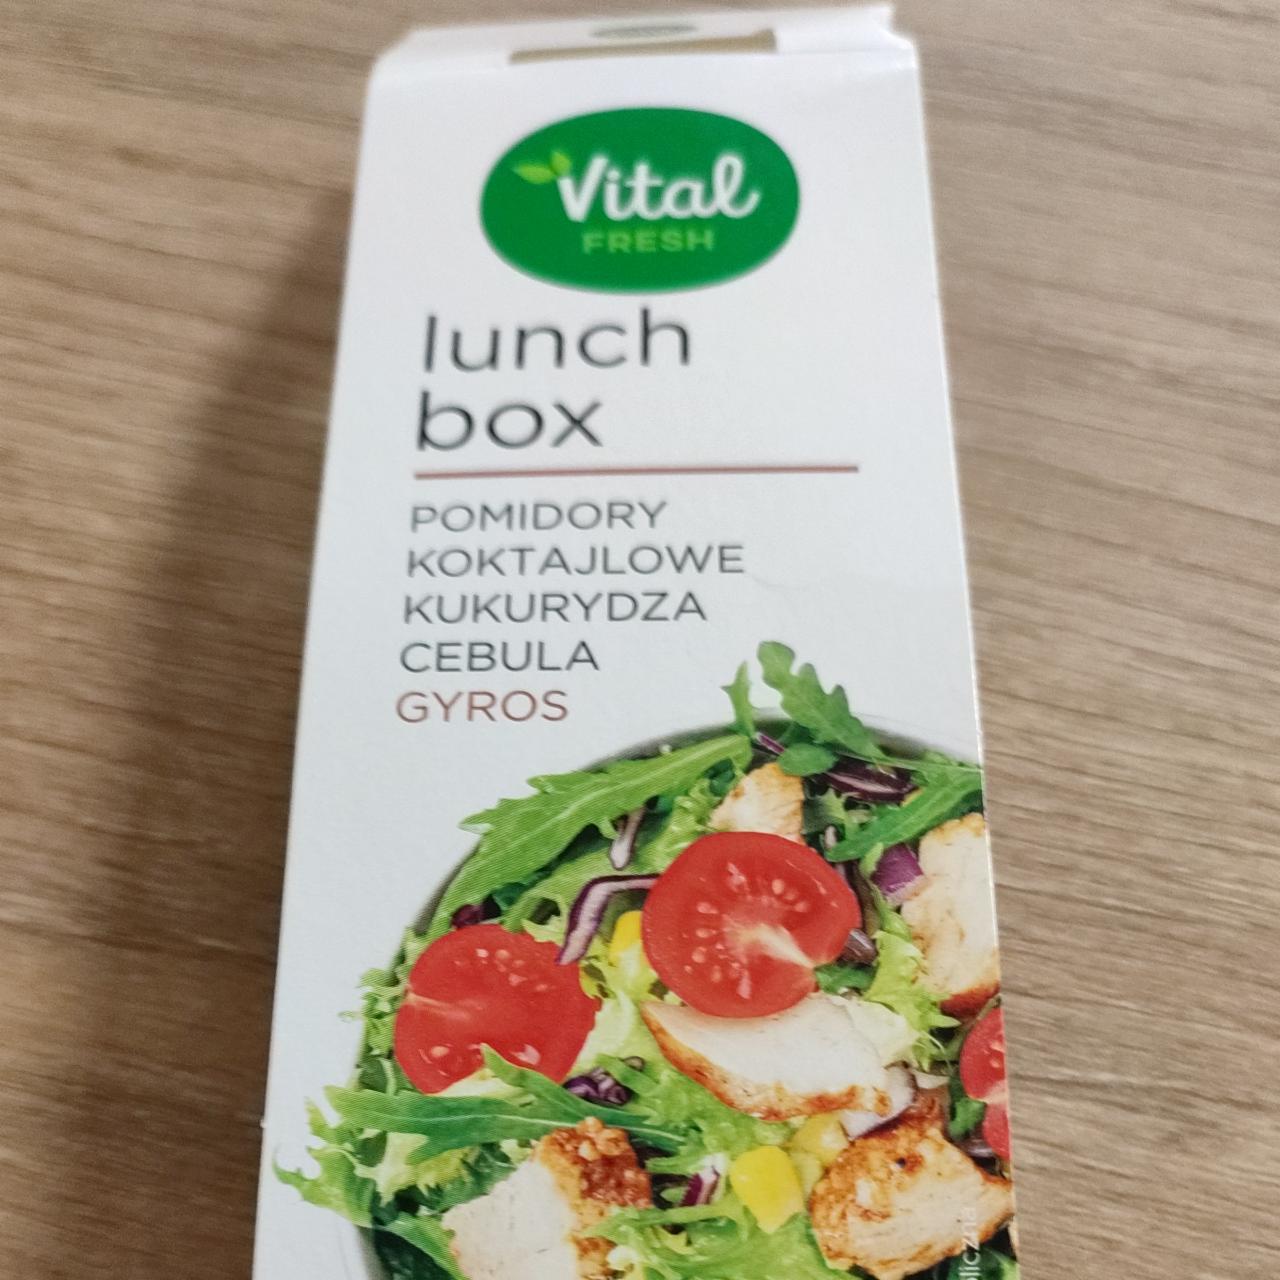 Zdjęcia - lunch box pomidory koktajlowe, kukurydza, cebula i gyros Vital Fresh